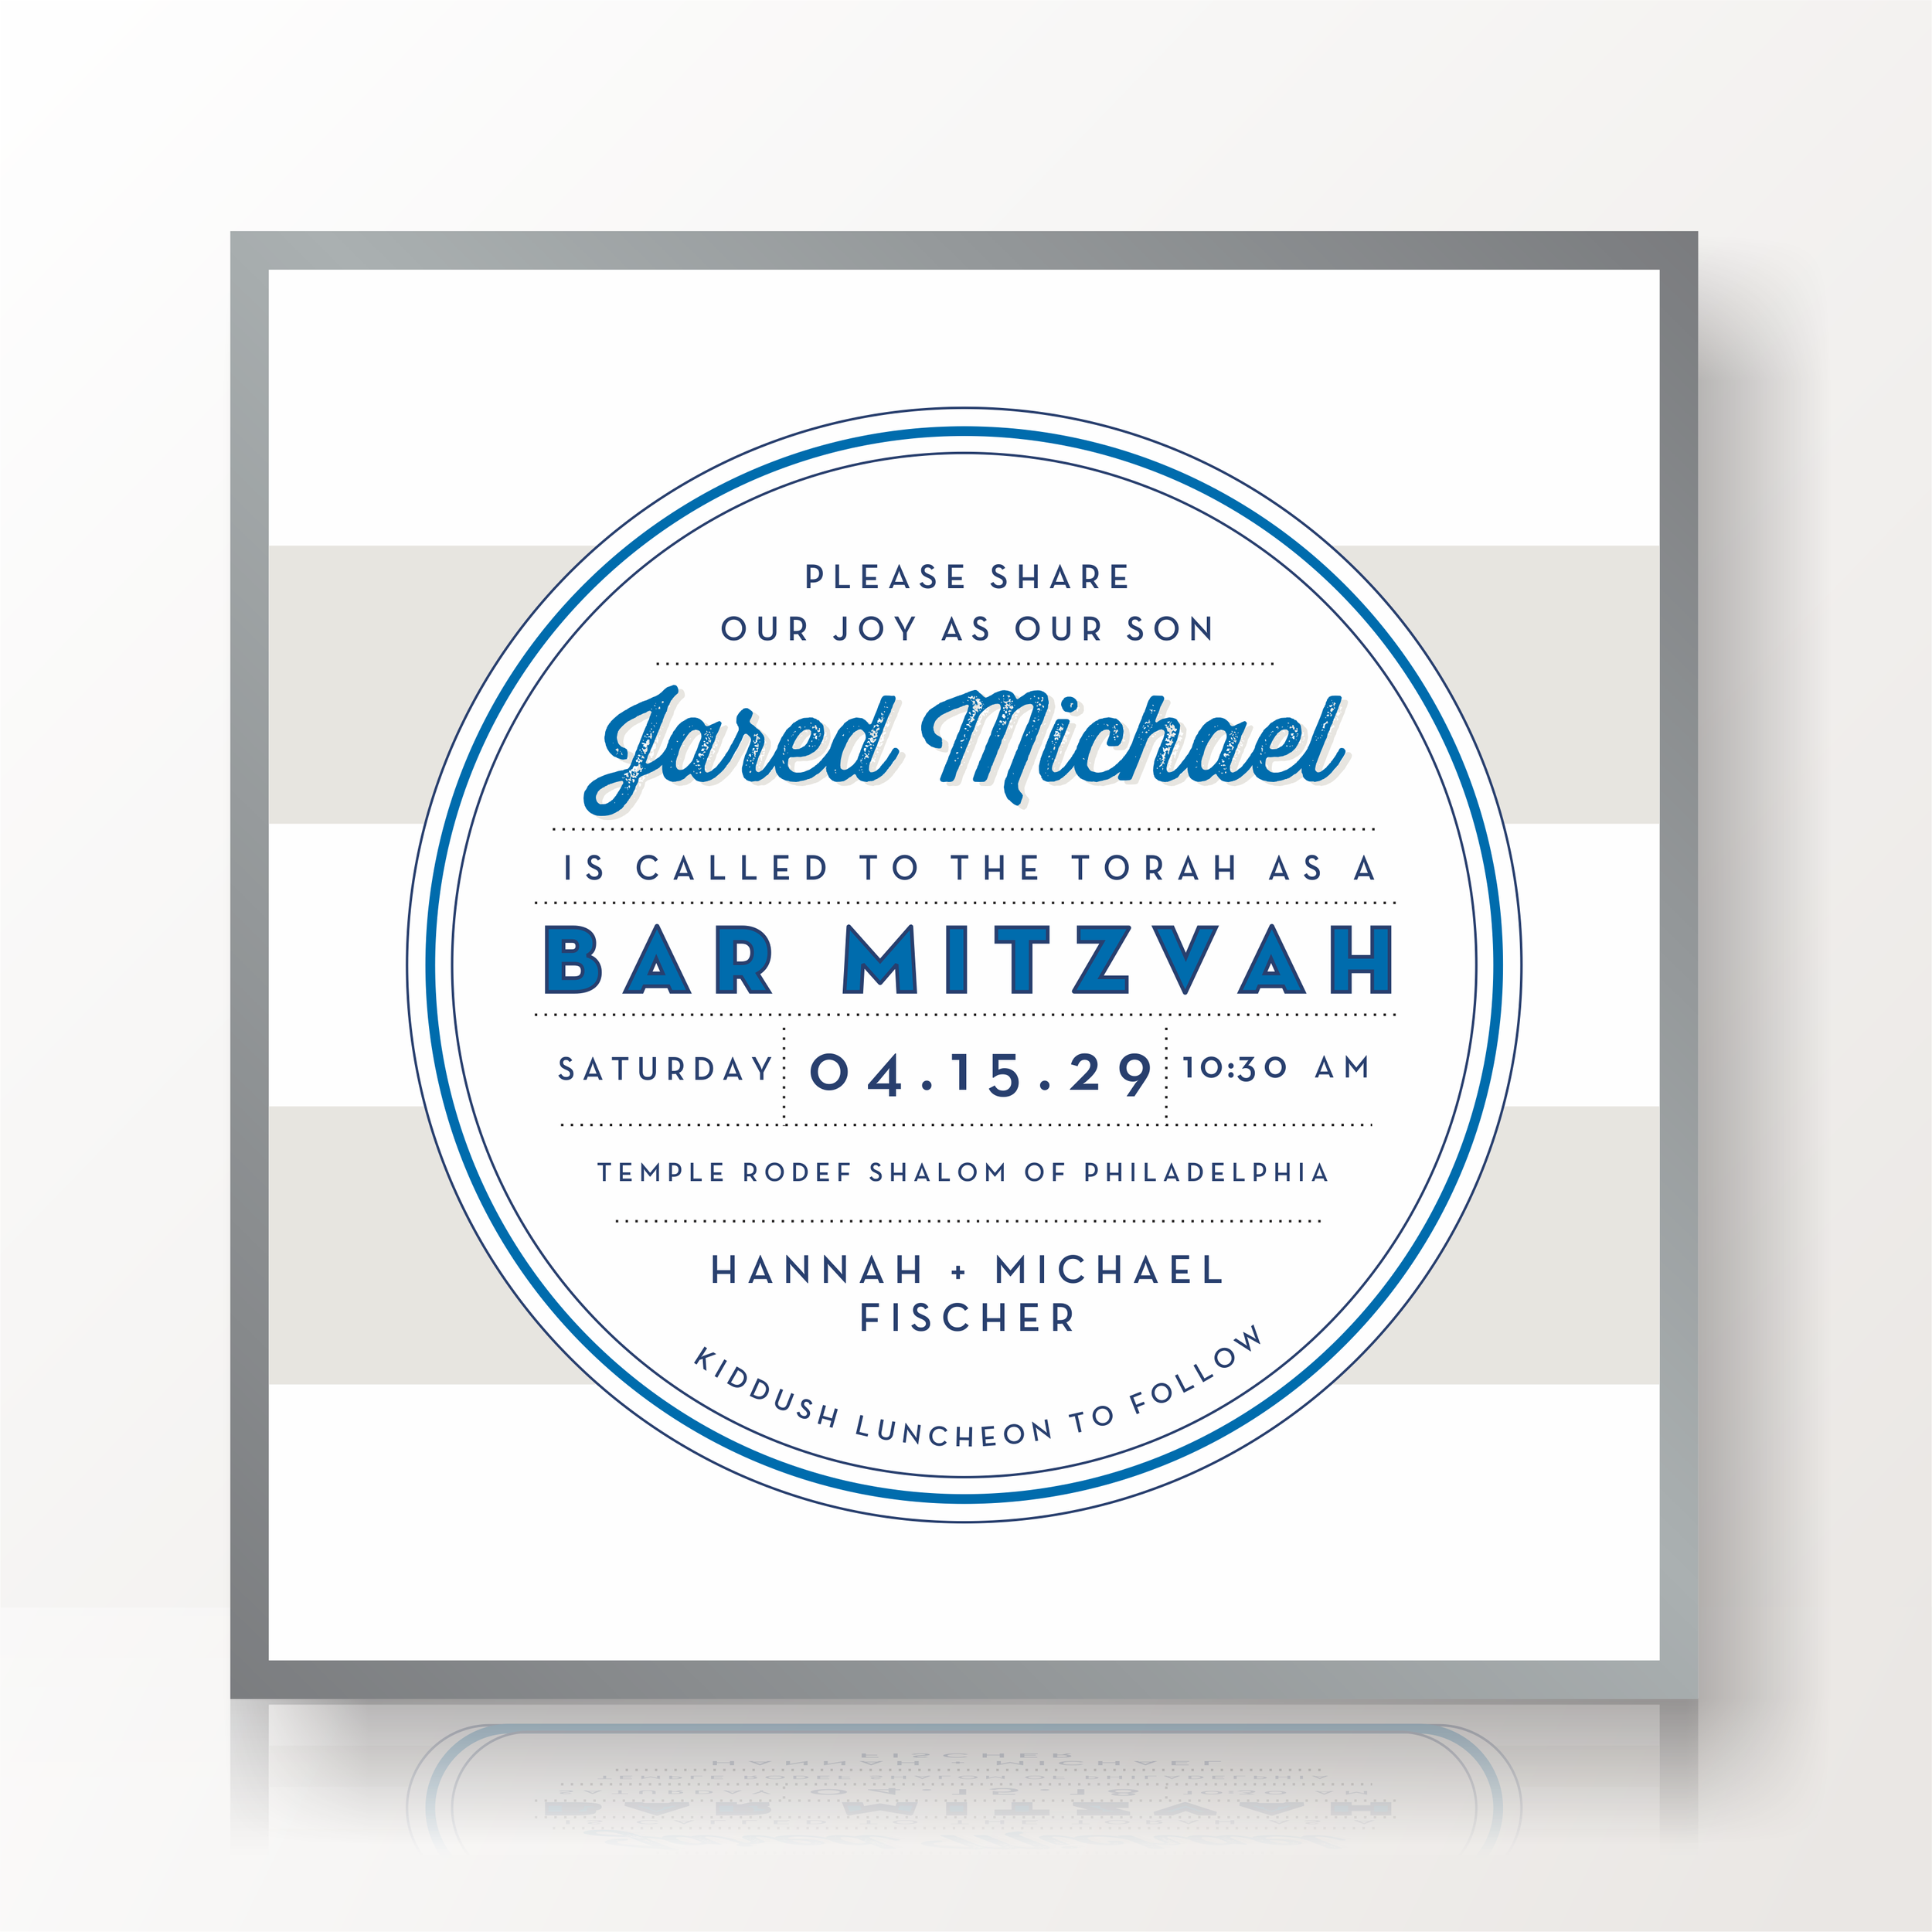 SARAH SCHWARTZ BAR MITZVAH INVITATION SUITE 5236